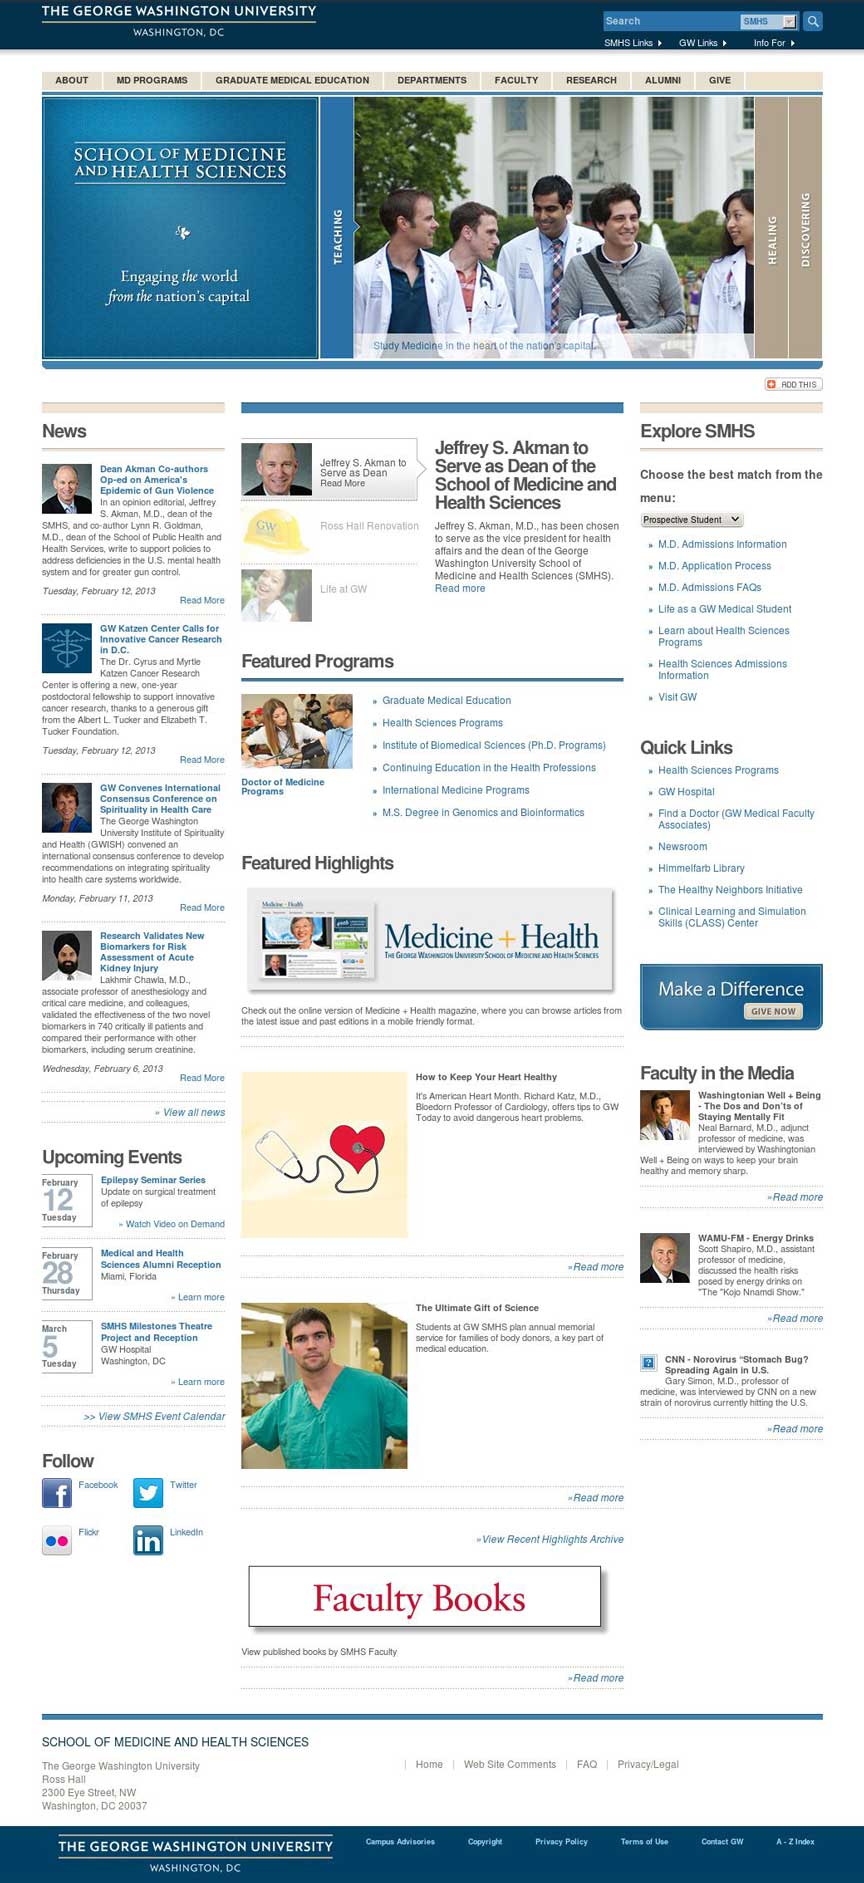 SMHS Homepage Design in Drupal